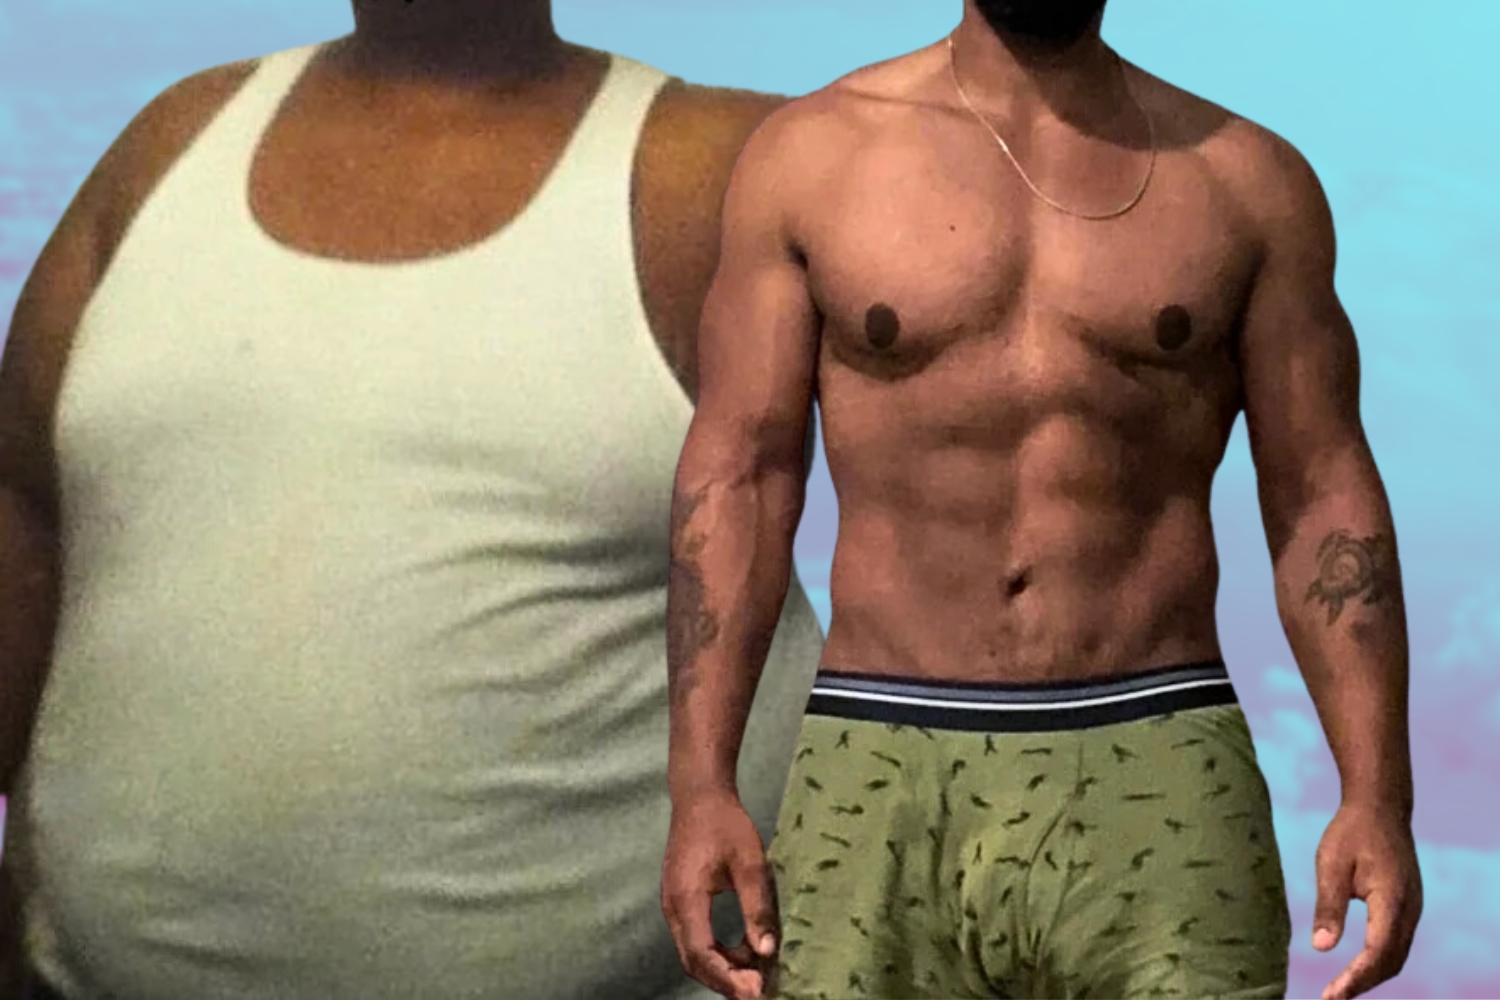 Un hombre de 30 años comparte los 5 secretos de su enorme pérdida de peso de 95 kg.